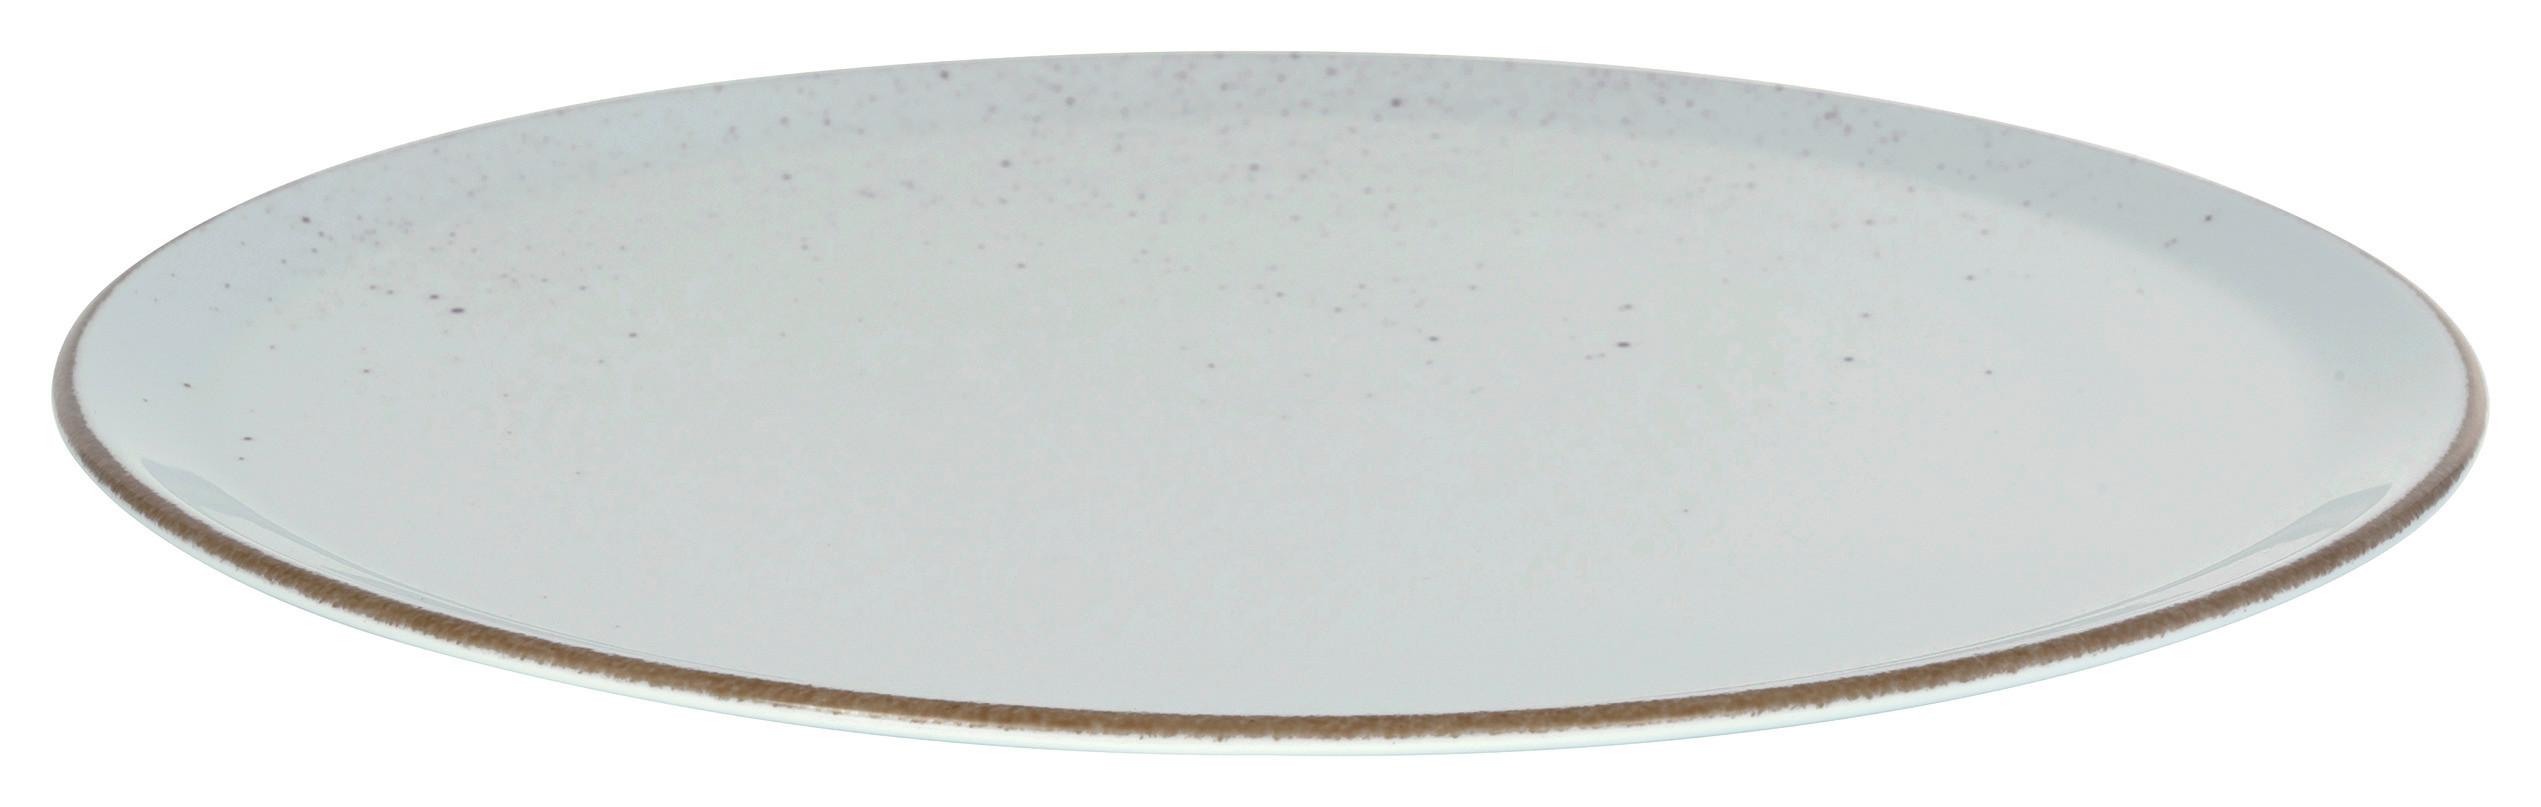 Pizzateller Capri in Weiß Ø ca. 33cm - Weiß, MODERN, Keramik (33/33/2cm) - Premium Living